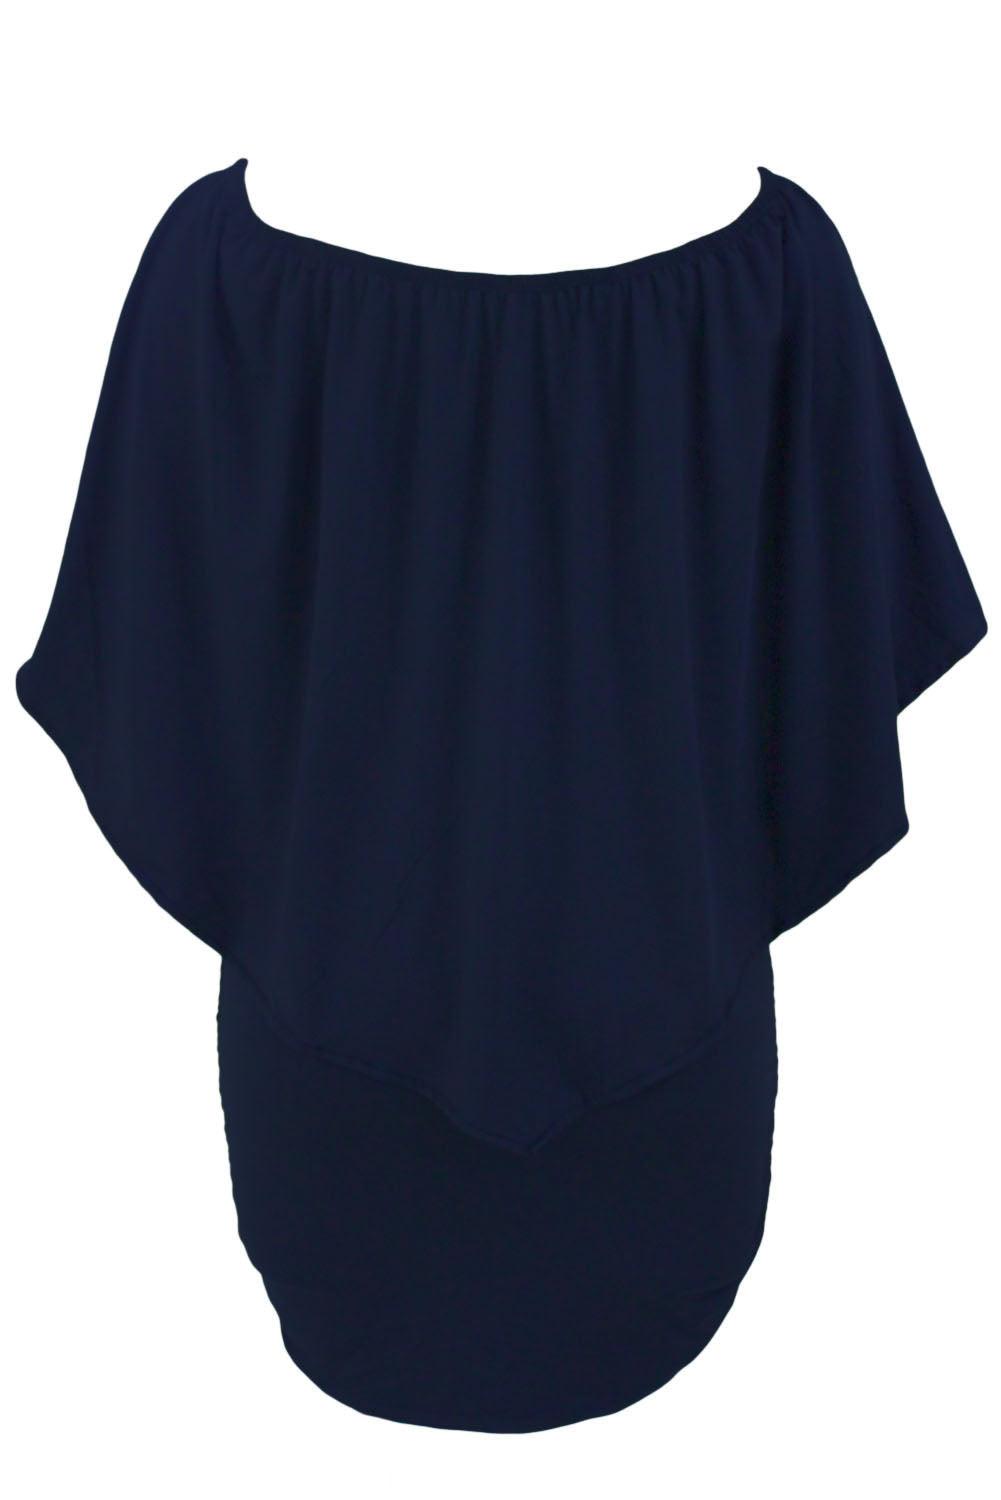 Multiple Dressing Layered Dark Blue Mini Poncho Dress - L & M Kee, LLC